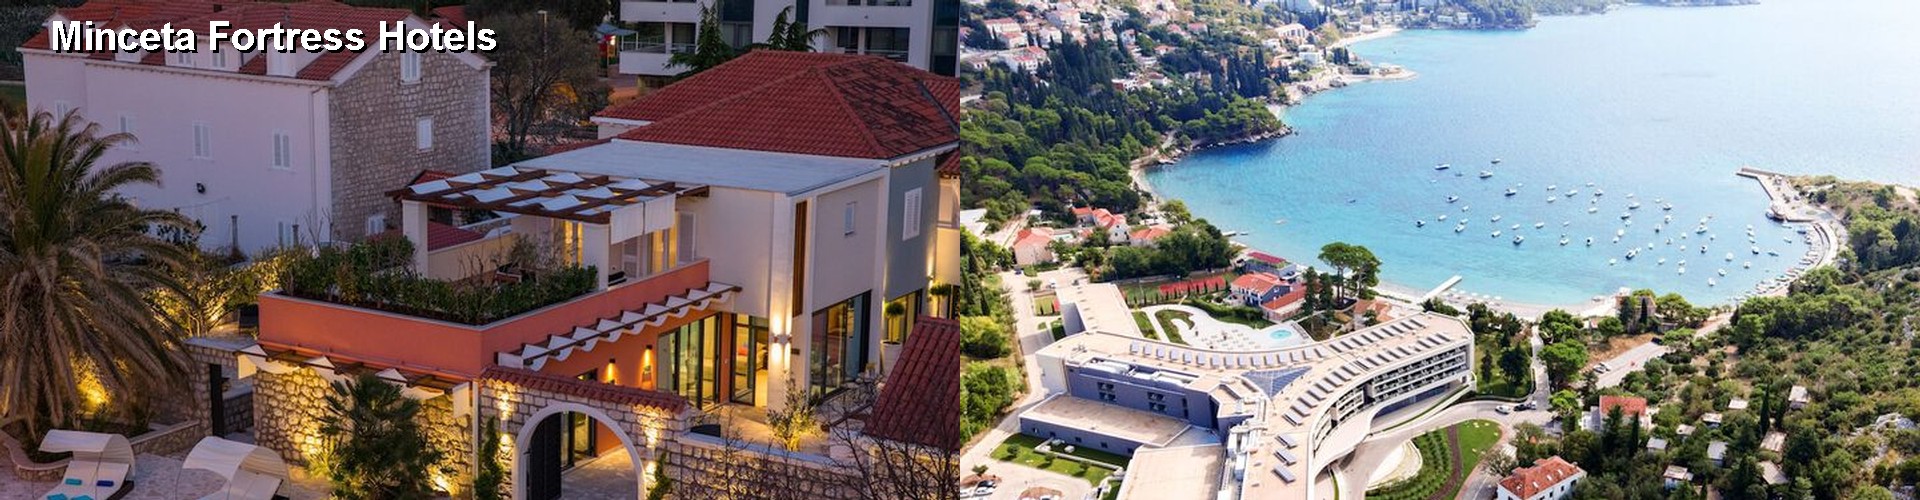 5 Best Hotels near Minceta Fortress